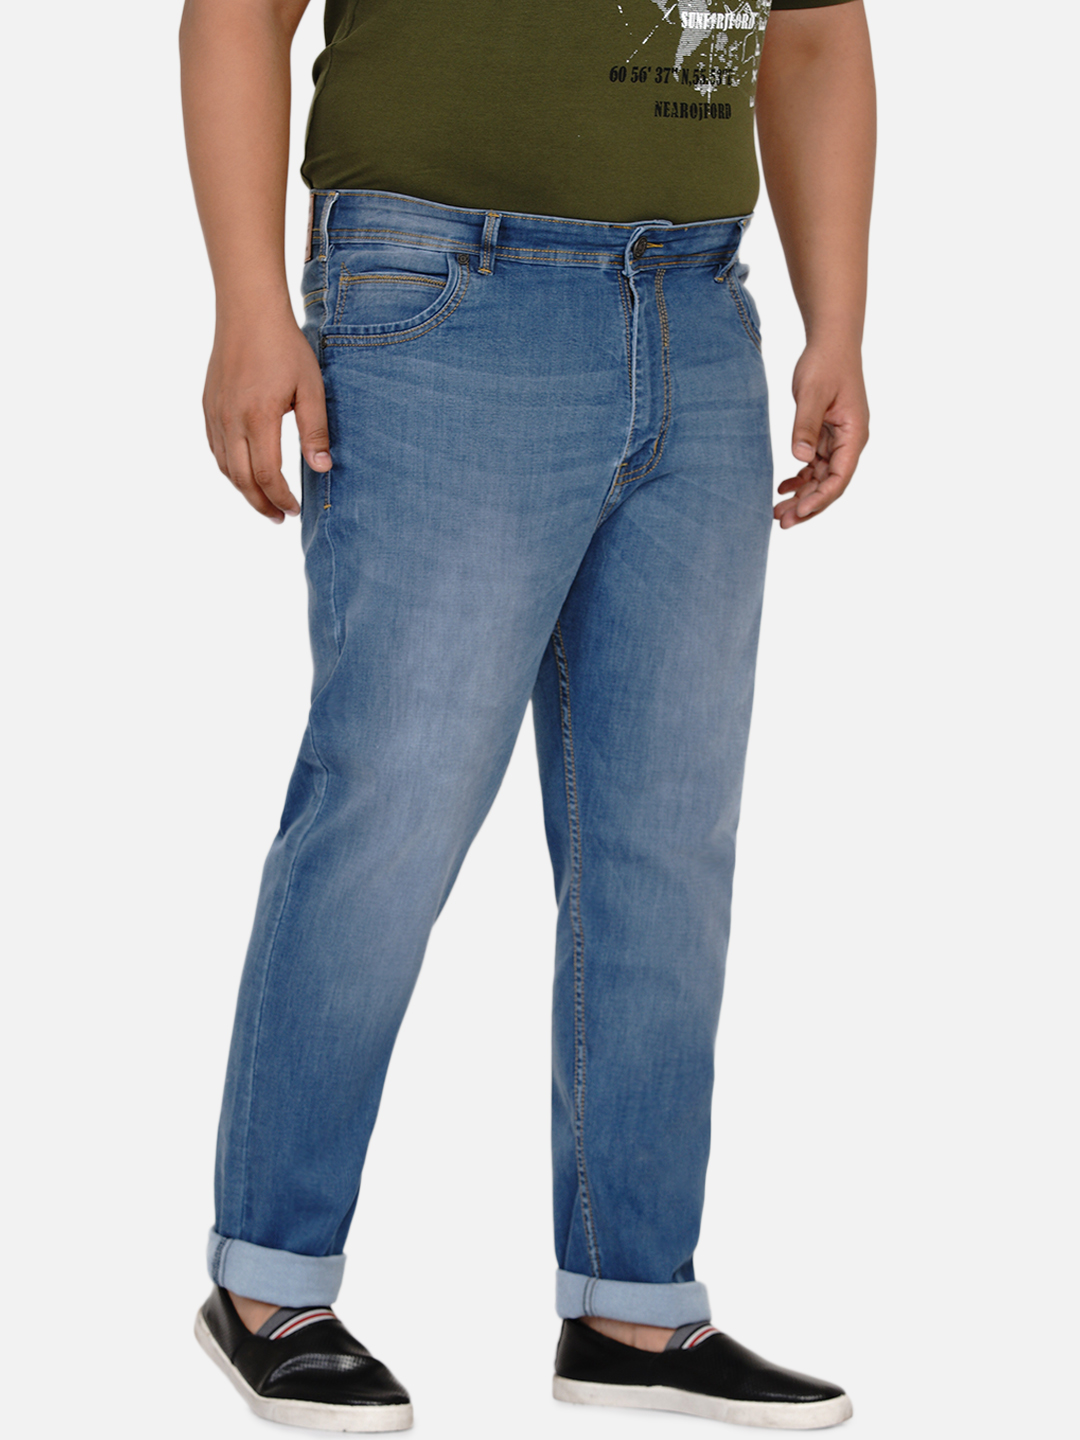 affordables/jeans/EJPJ2021/ejpj2021-4.jpg